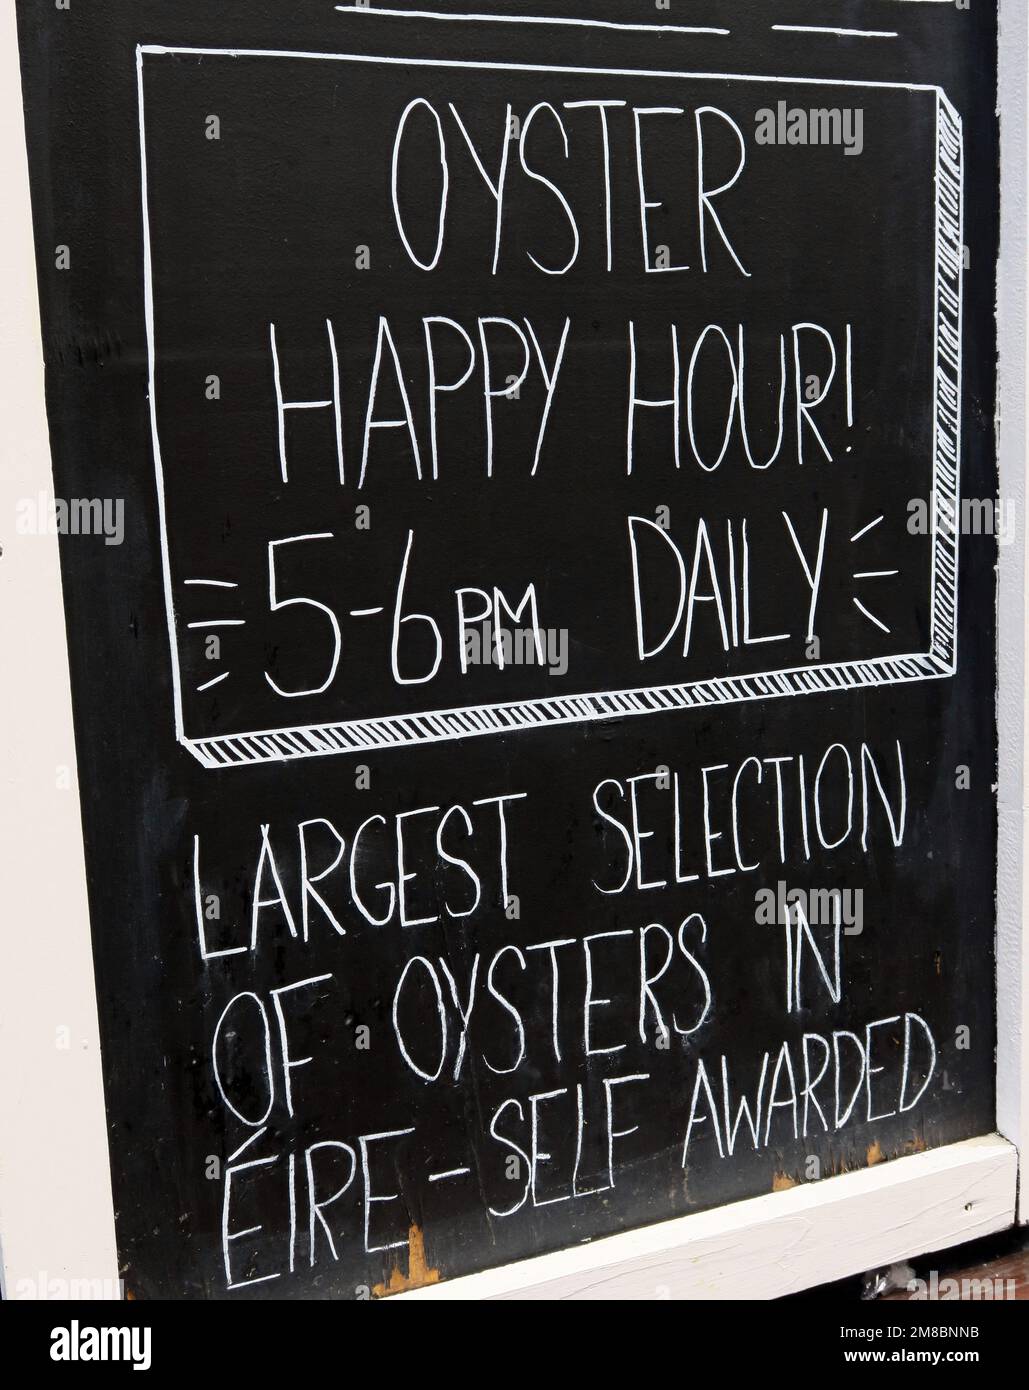 Oyster Happy Hour, dalle 5:6pm alle 22:00, tutti i giorni, cartello con lavagna, Eire, Irlanda Foto Stock